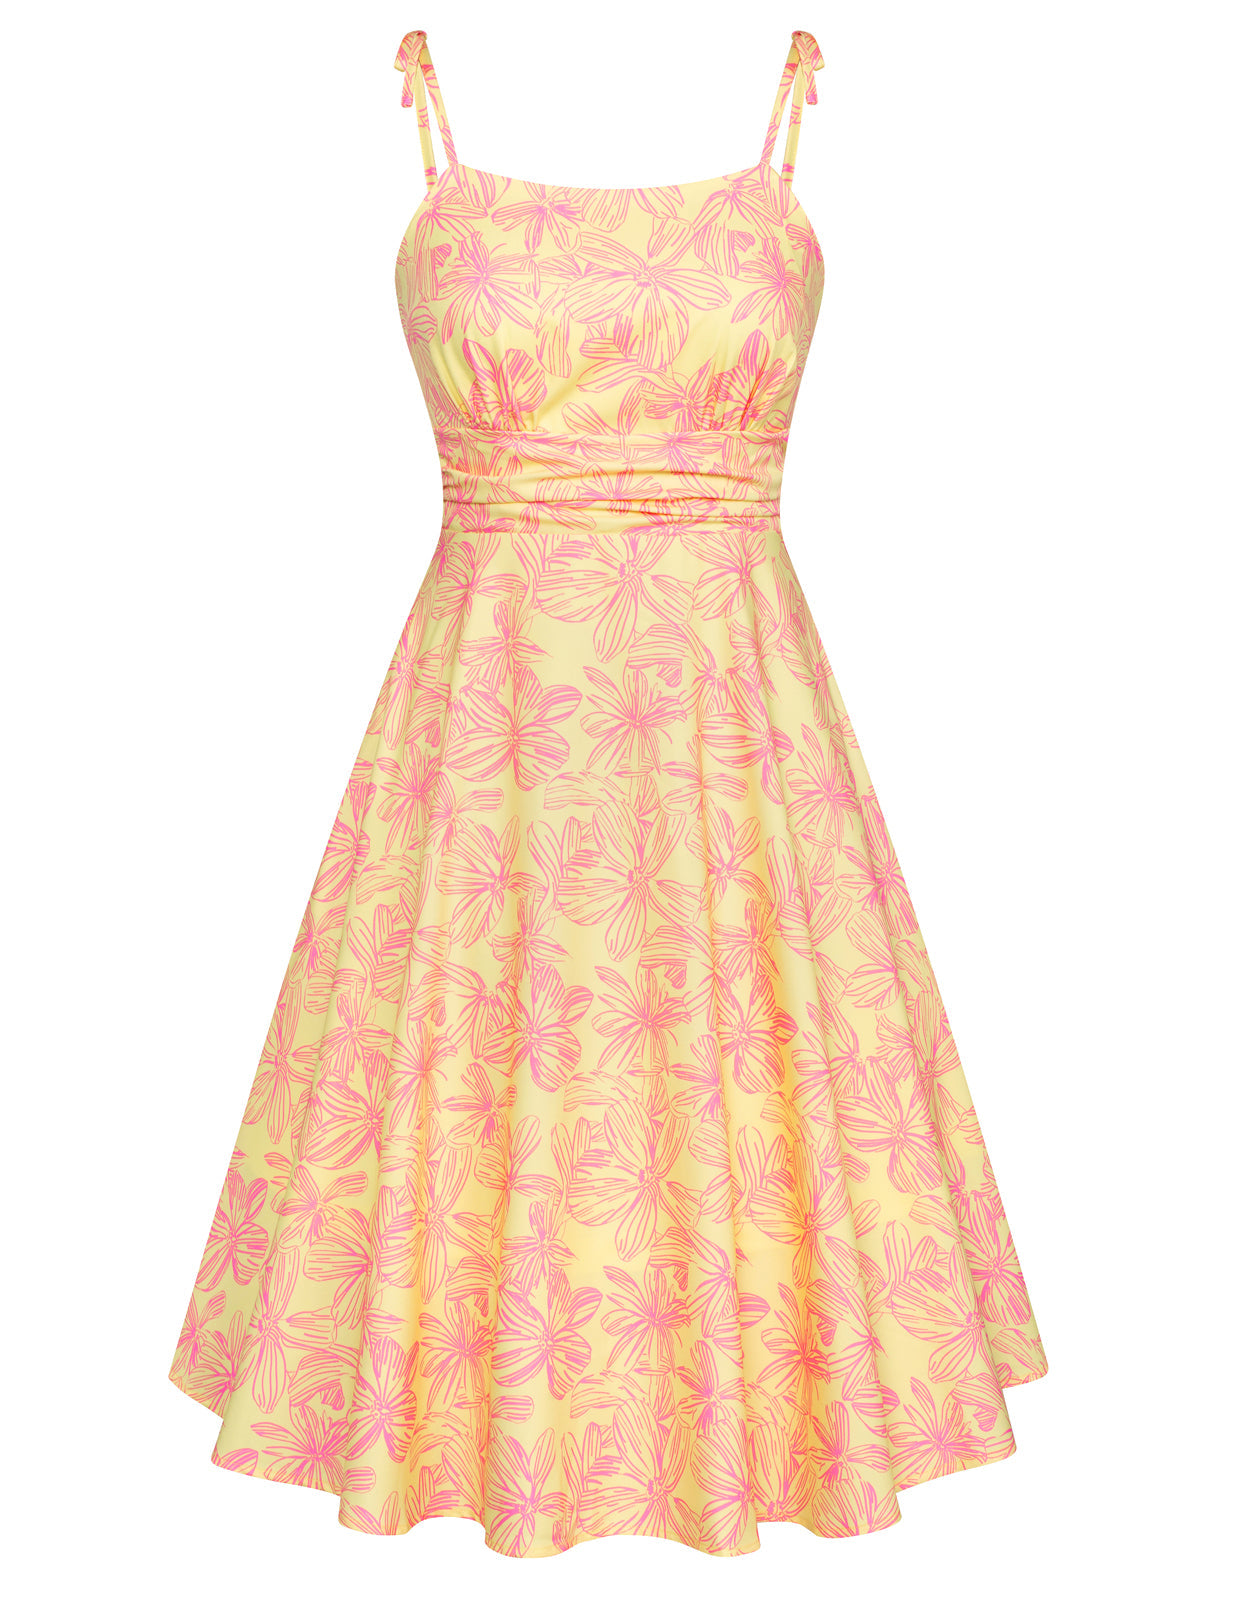 Vintage Floral Pattern Slip Dress